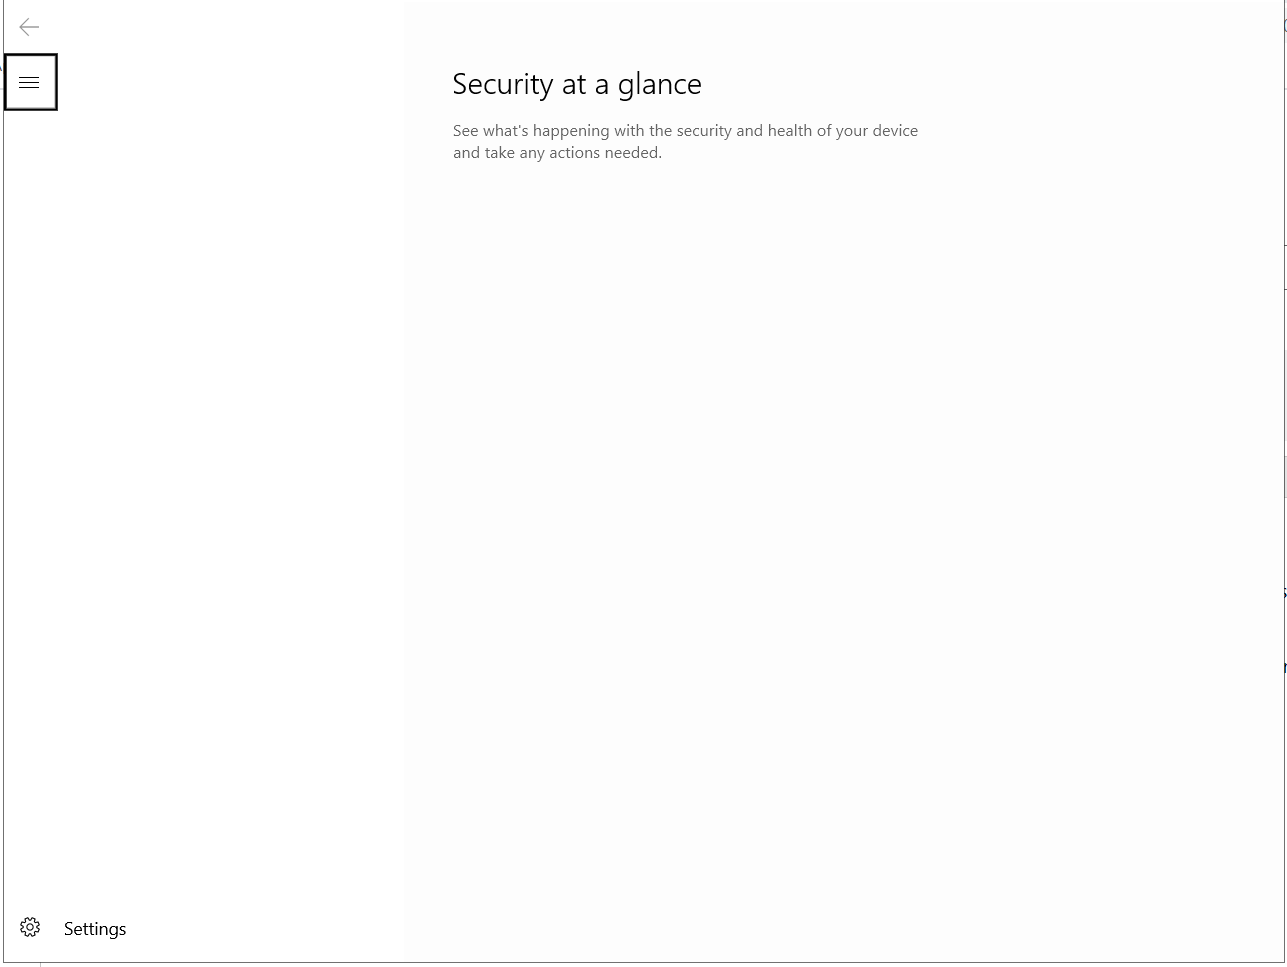 Windows Security Issue cb6fadb8-4204-47d7-884b-b2ee1e9cd6b7?upload=true.png